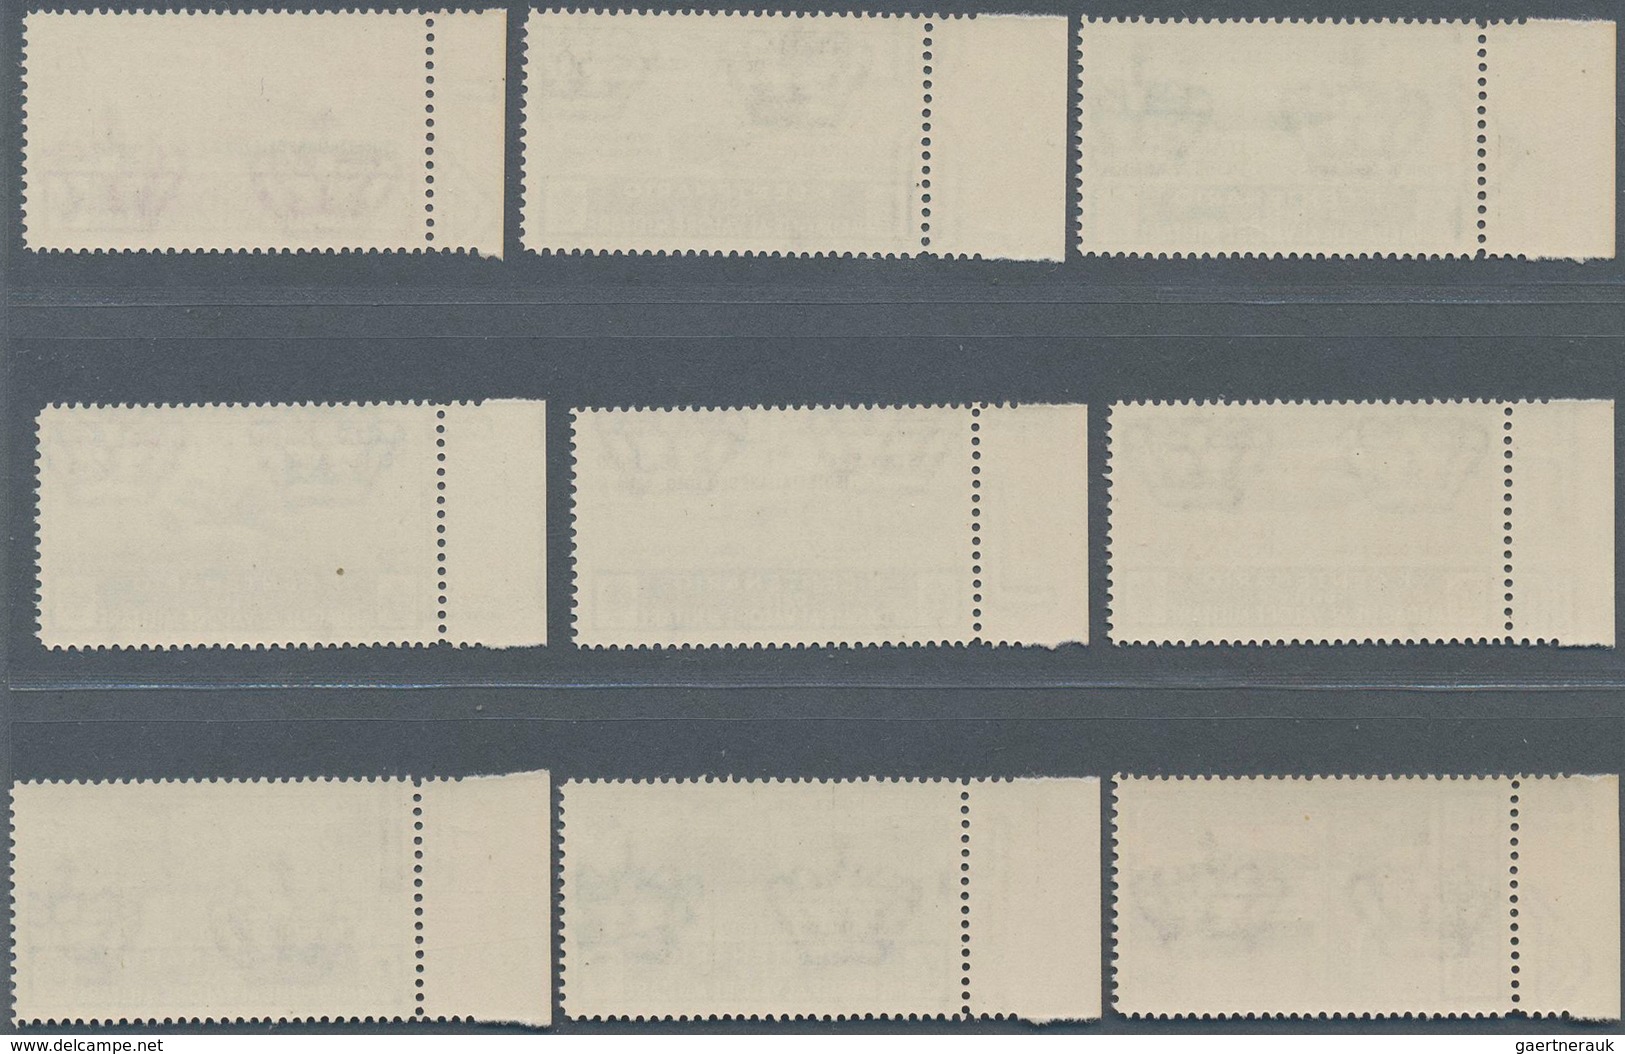 Ägäische Inseln: 1935, Airmail & Zeppelin Overprint Set From Sheet Margin Completely Mint, (Sassone - Aegean